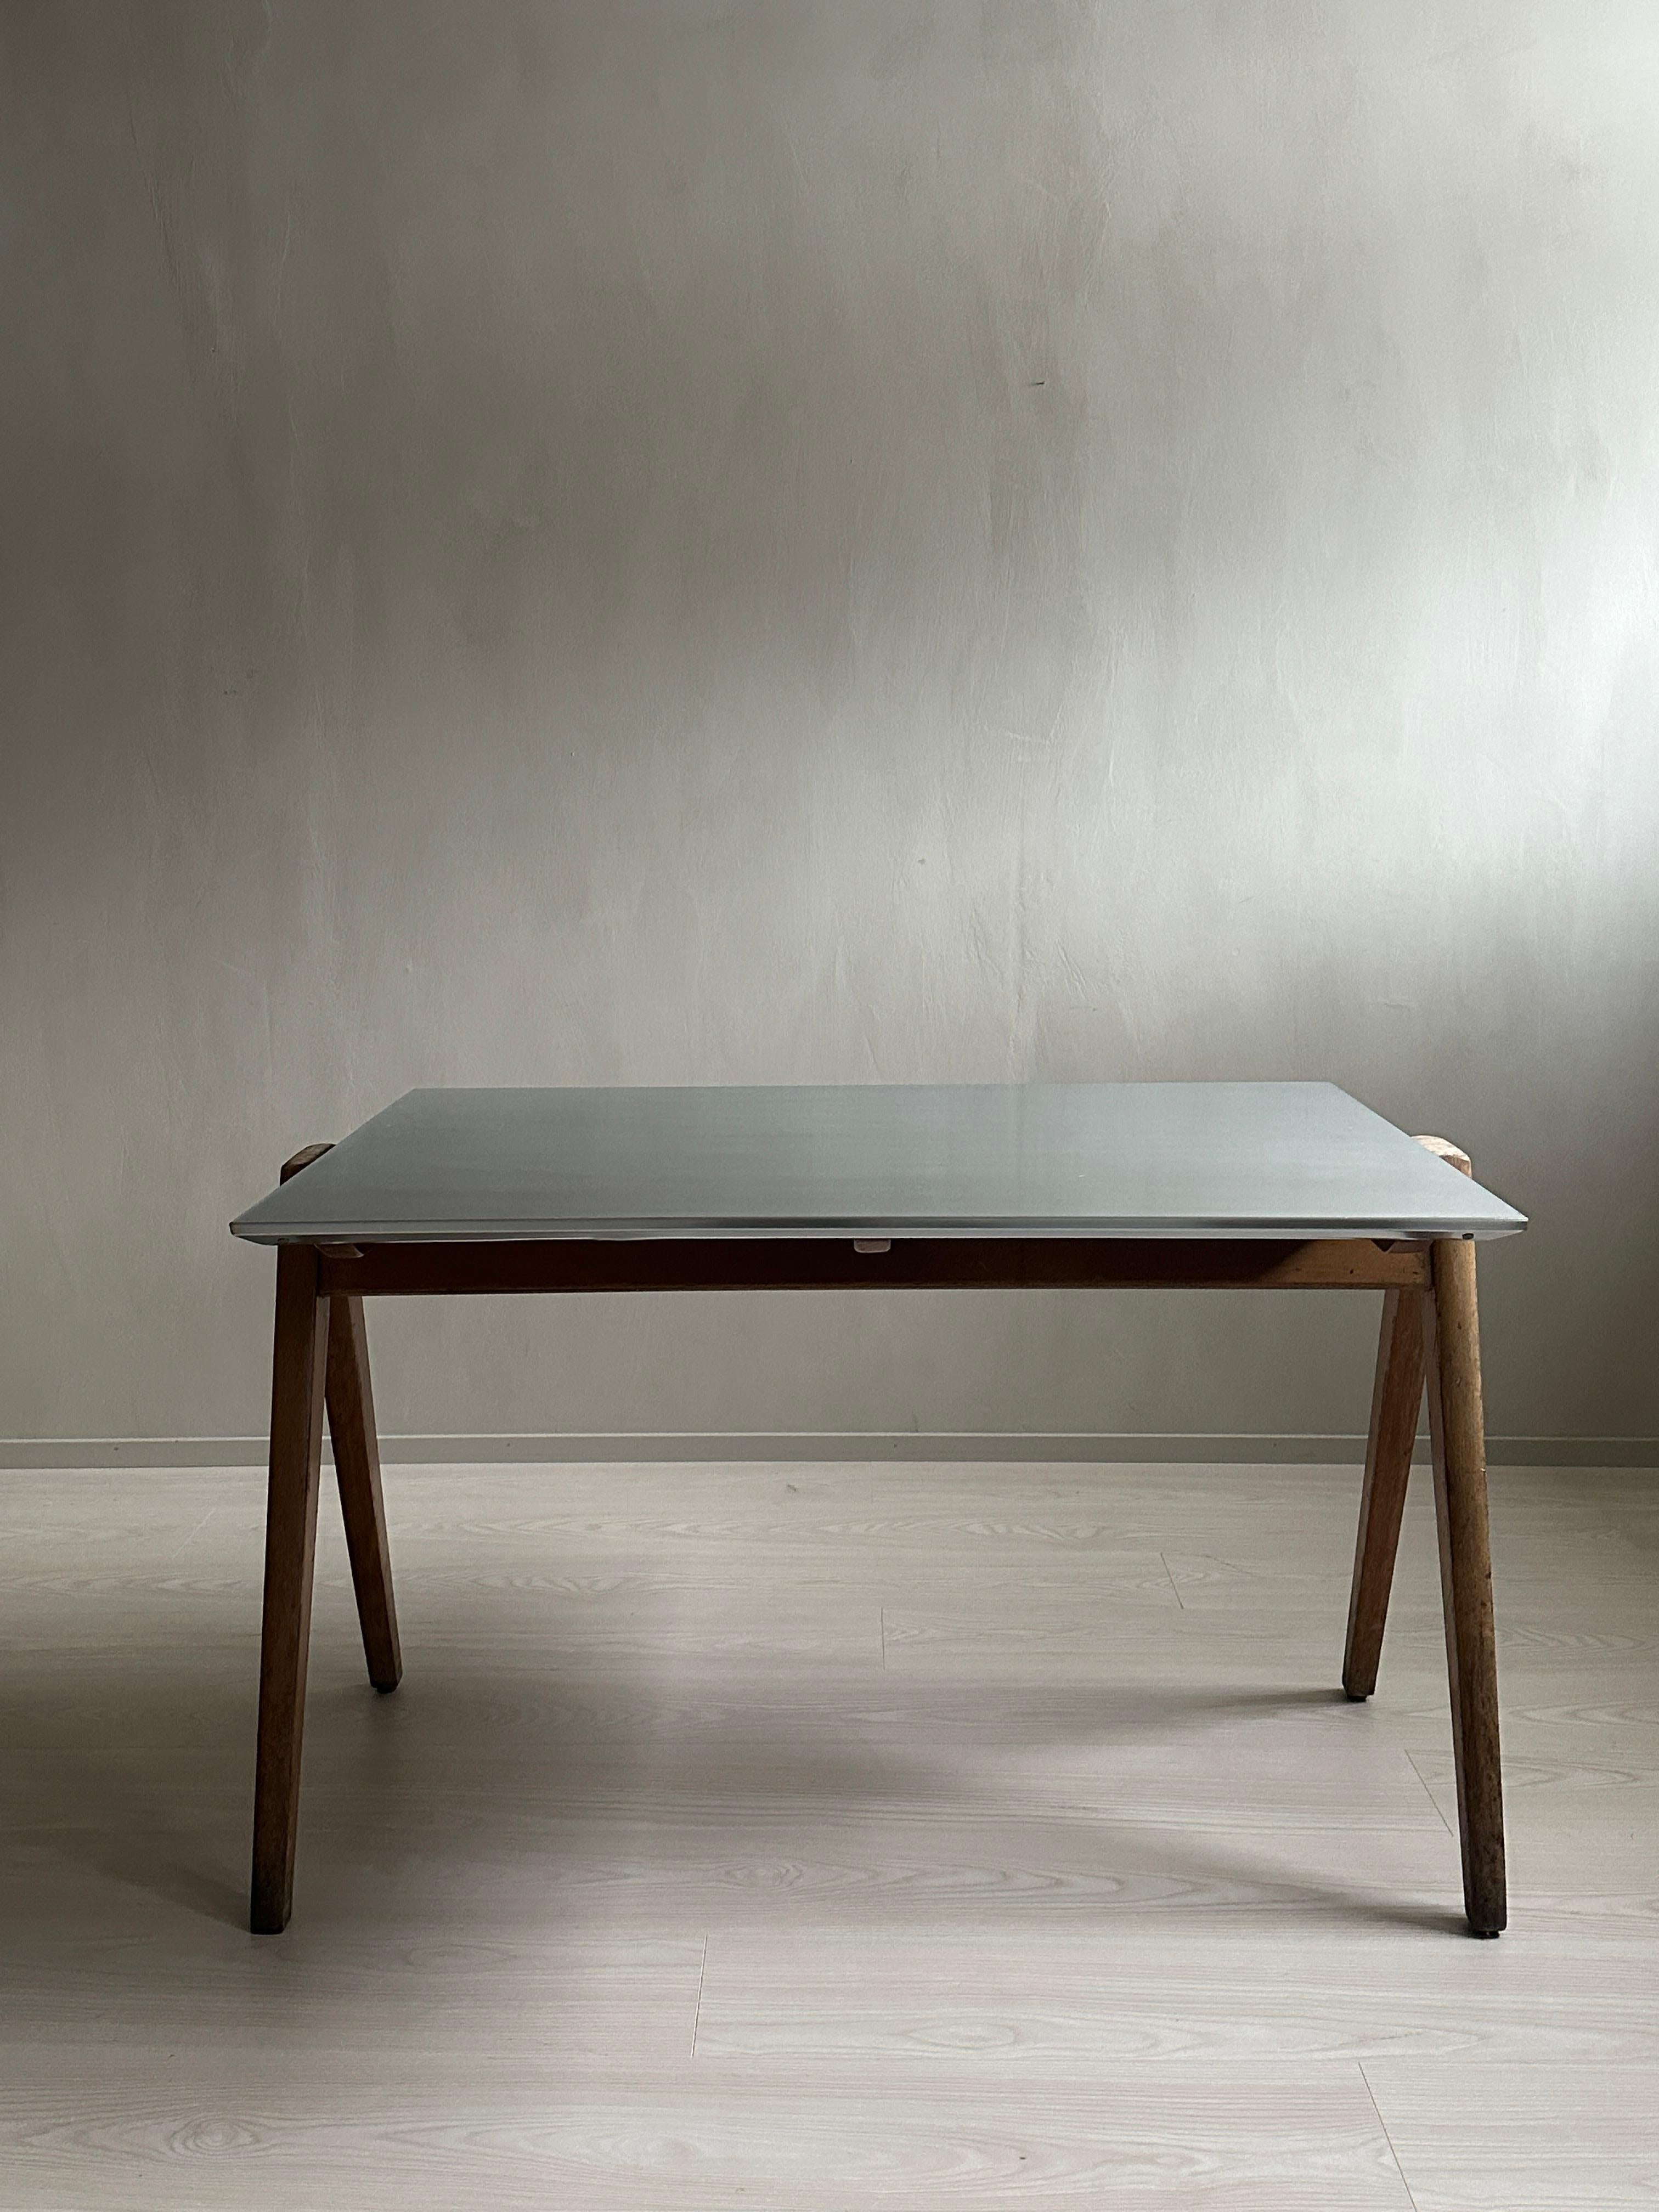 Dieser Schreibtisch aus der Jahrhundertmitte wurde von dem renommierten Designer Robin Day entworfen, der für seine Beiträge zum modernen Möbeldesign bekannt ist. 

Der Schreibtisch zeichnet sich durch seine schlichte und minimalistische Ästhetik